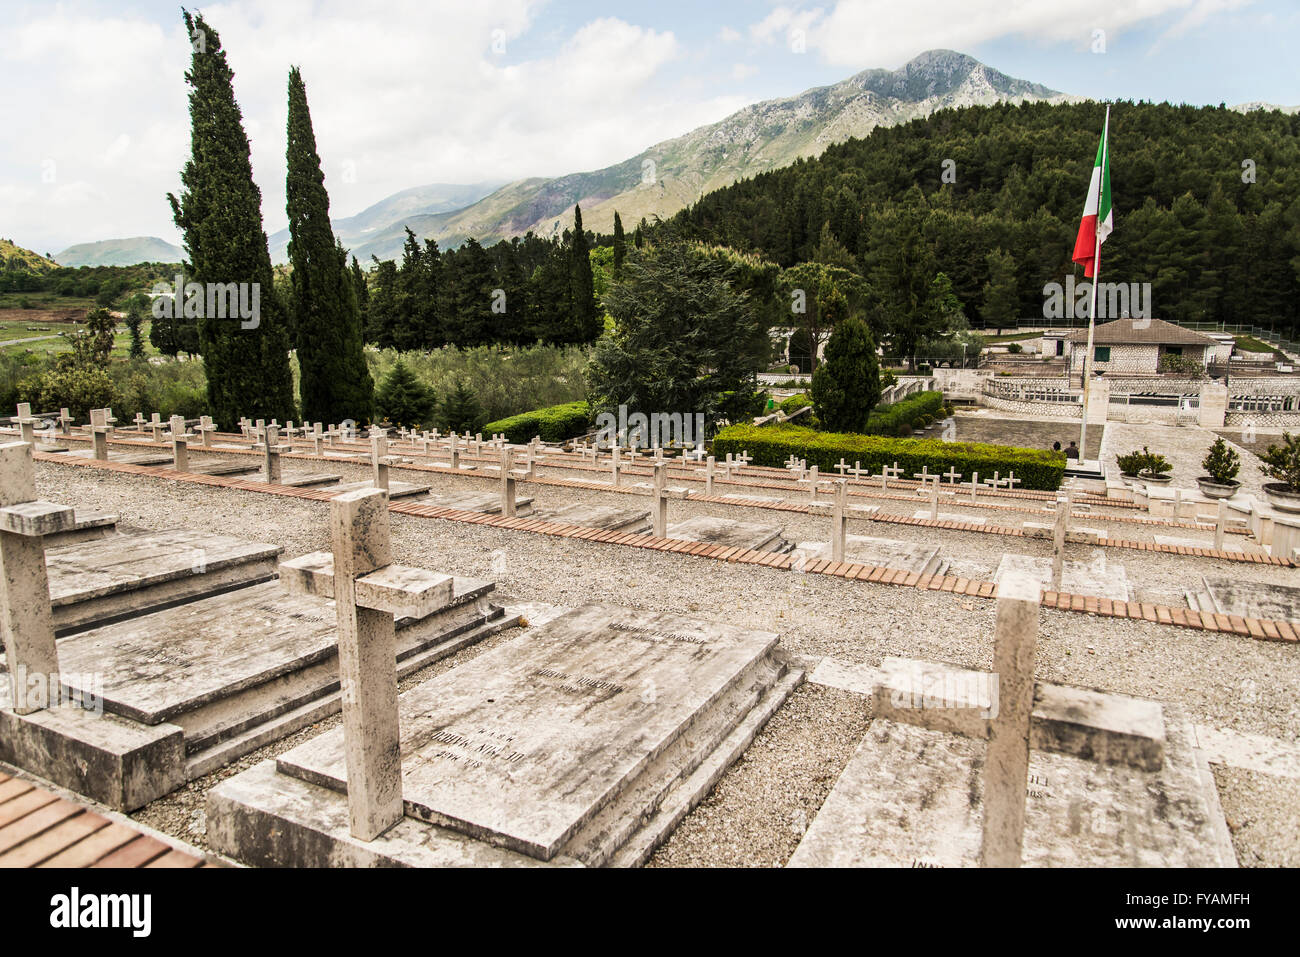 La DEUXIÈME GUERRE MONDIALE dans le cimetière polonais Monte Cassino, Italie Banque D'Images